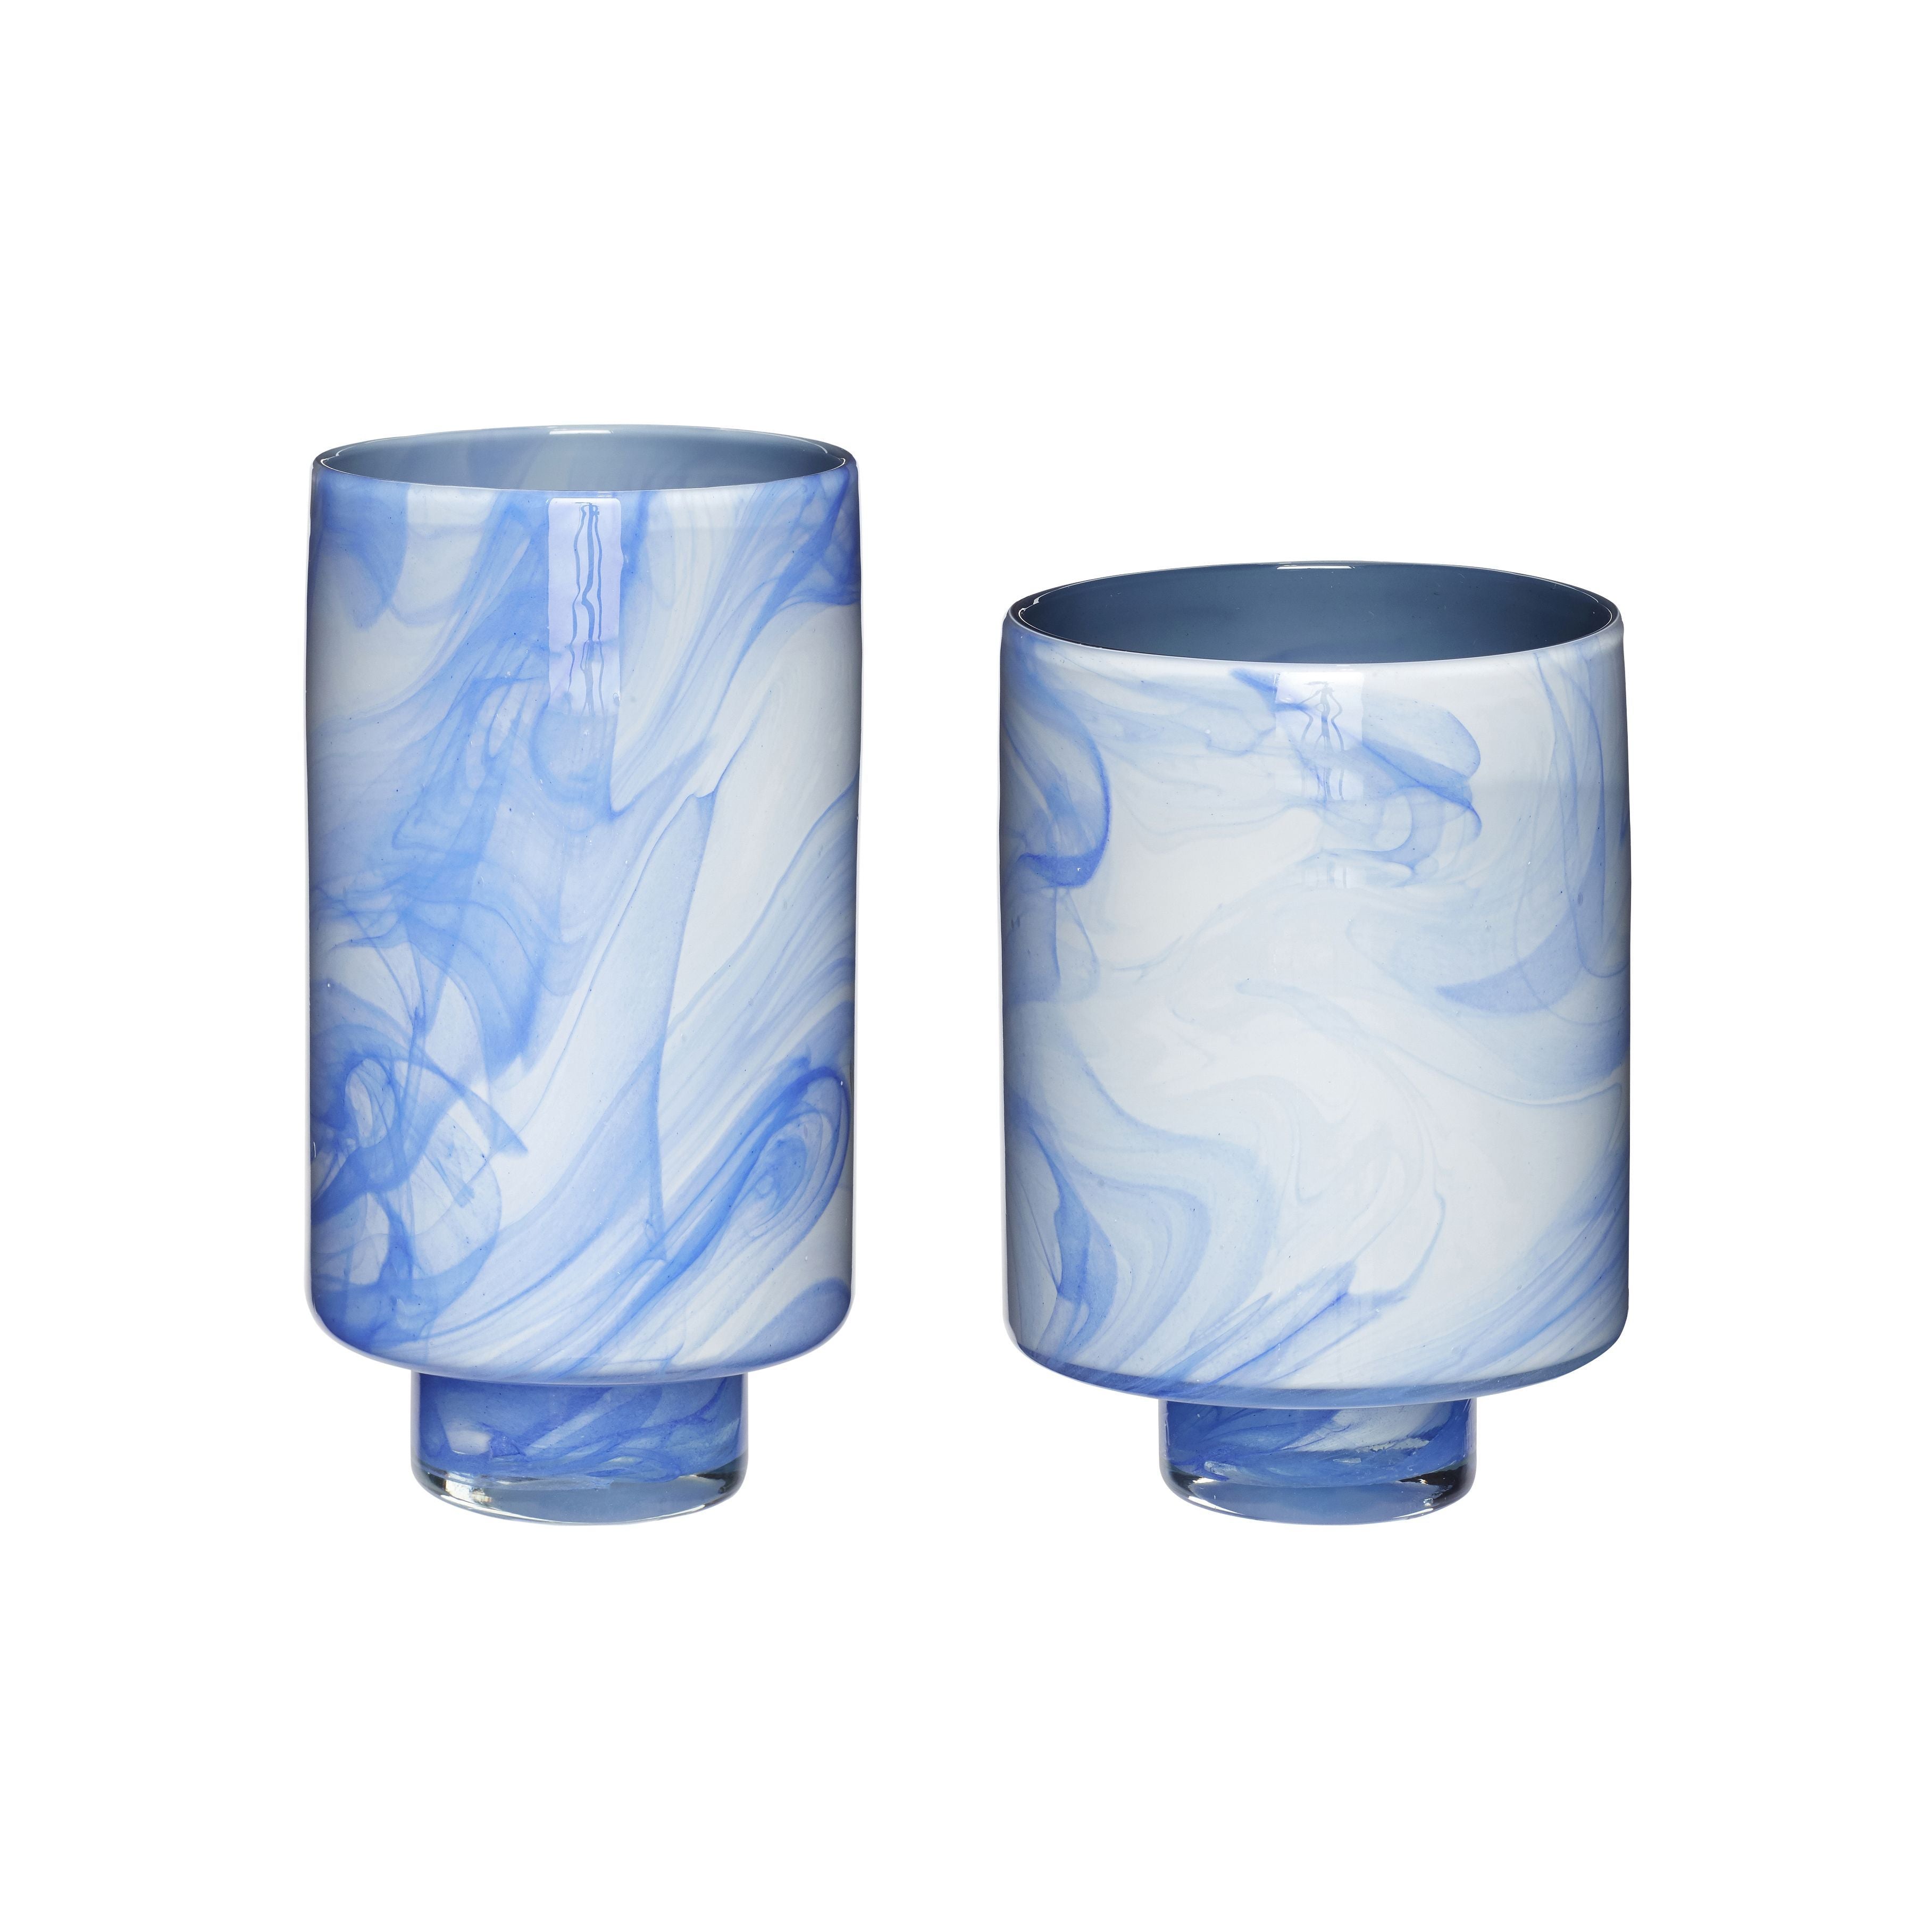 Hübsch Wolkenvase Glas Weiß/Blau S/2